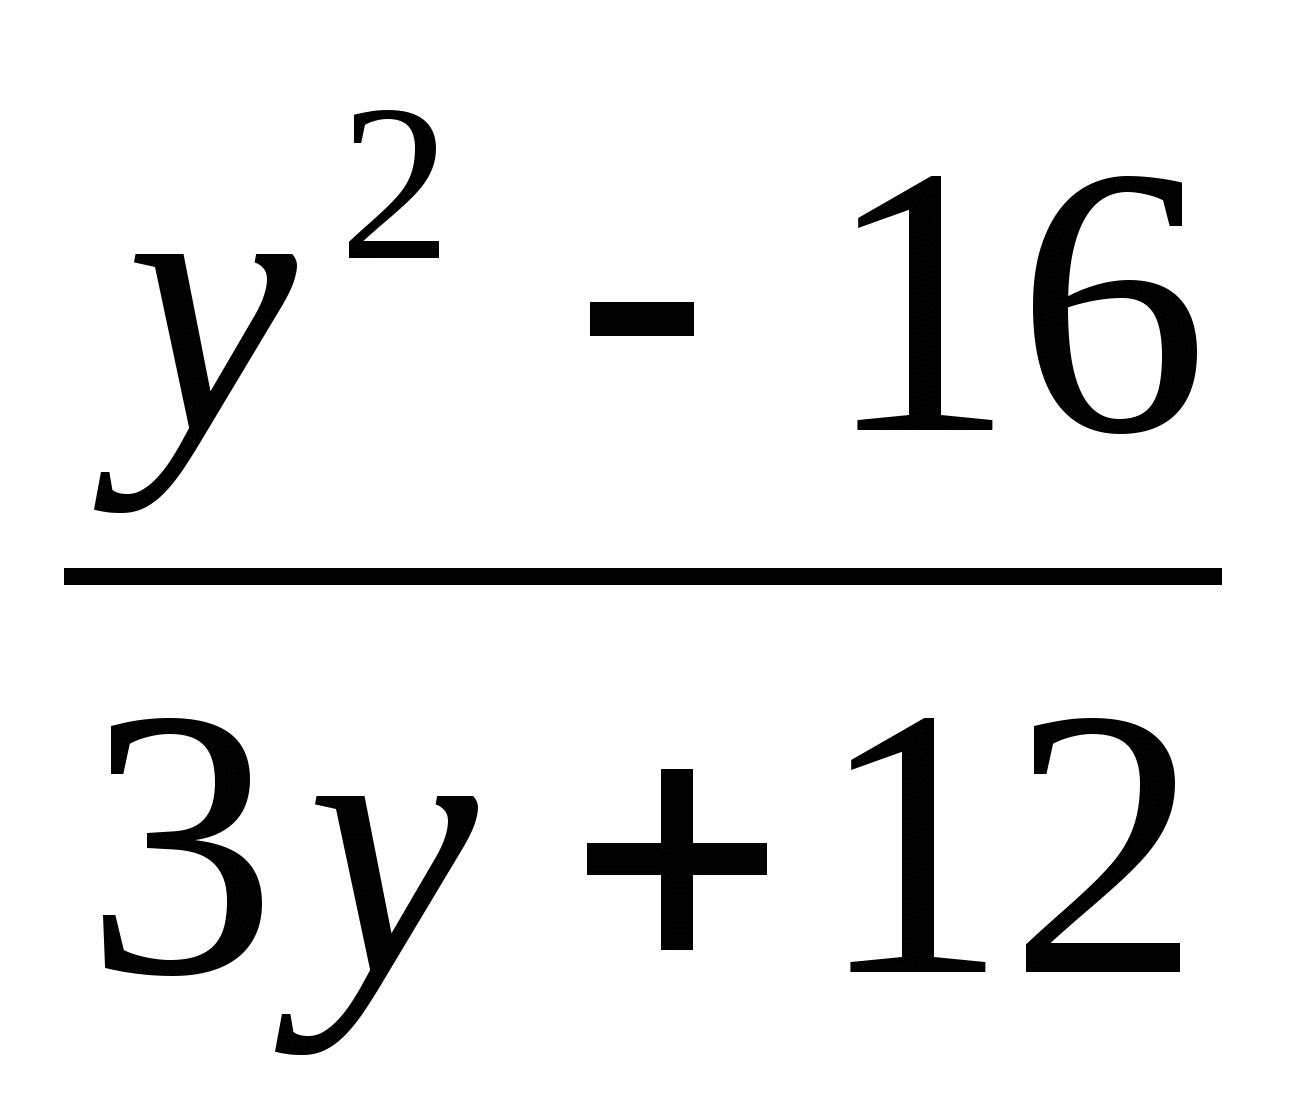 Разложение квадратного трехчлена на множители